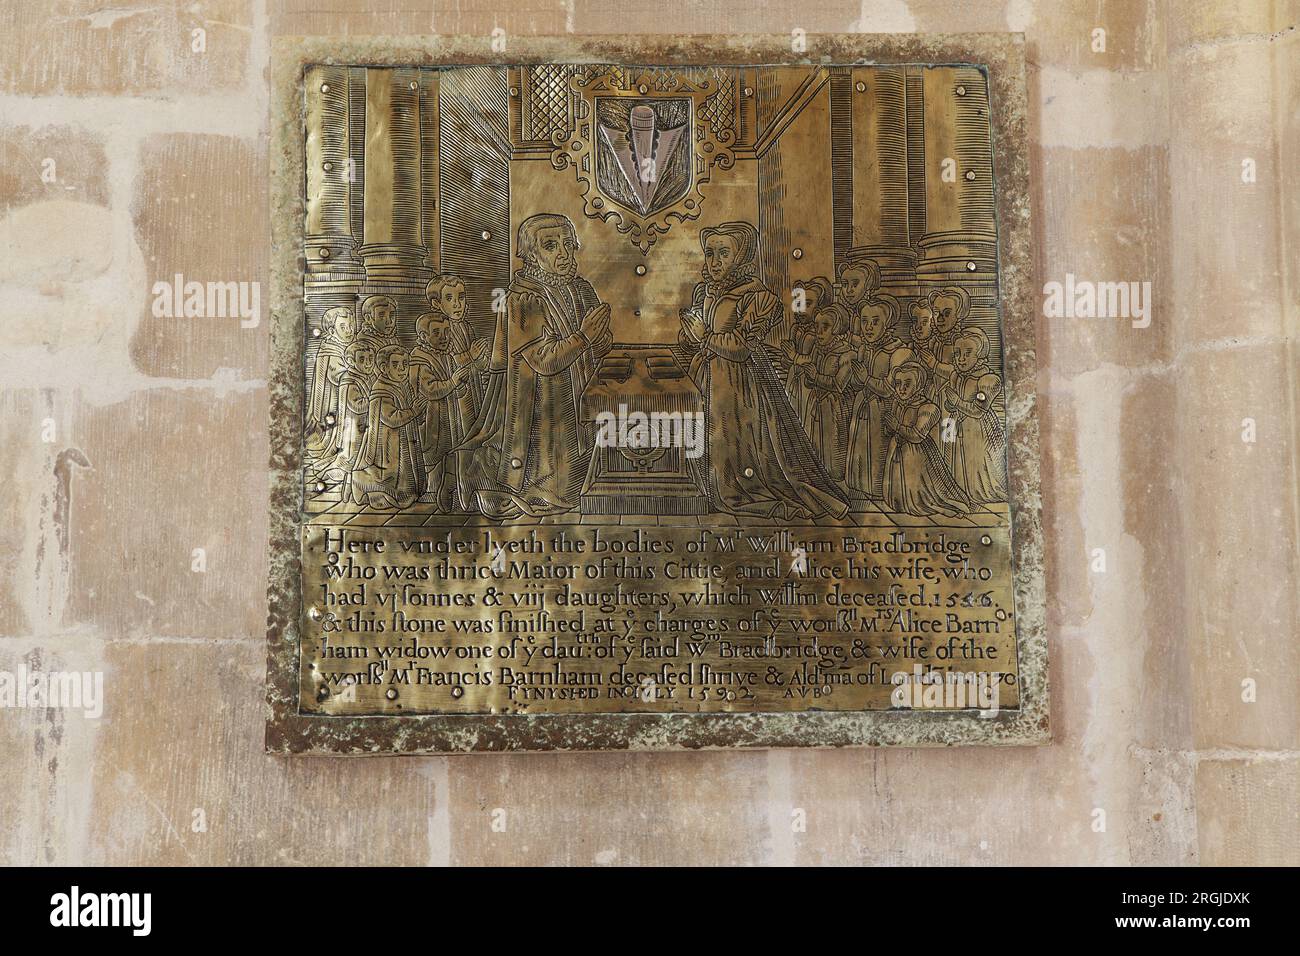 Targa commemorativa in ottone che indica che sei stata posata per riposare all'interno della famiglia Bradbridge. Foto Stock